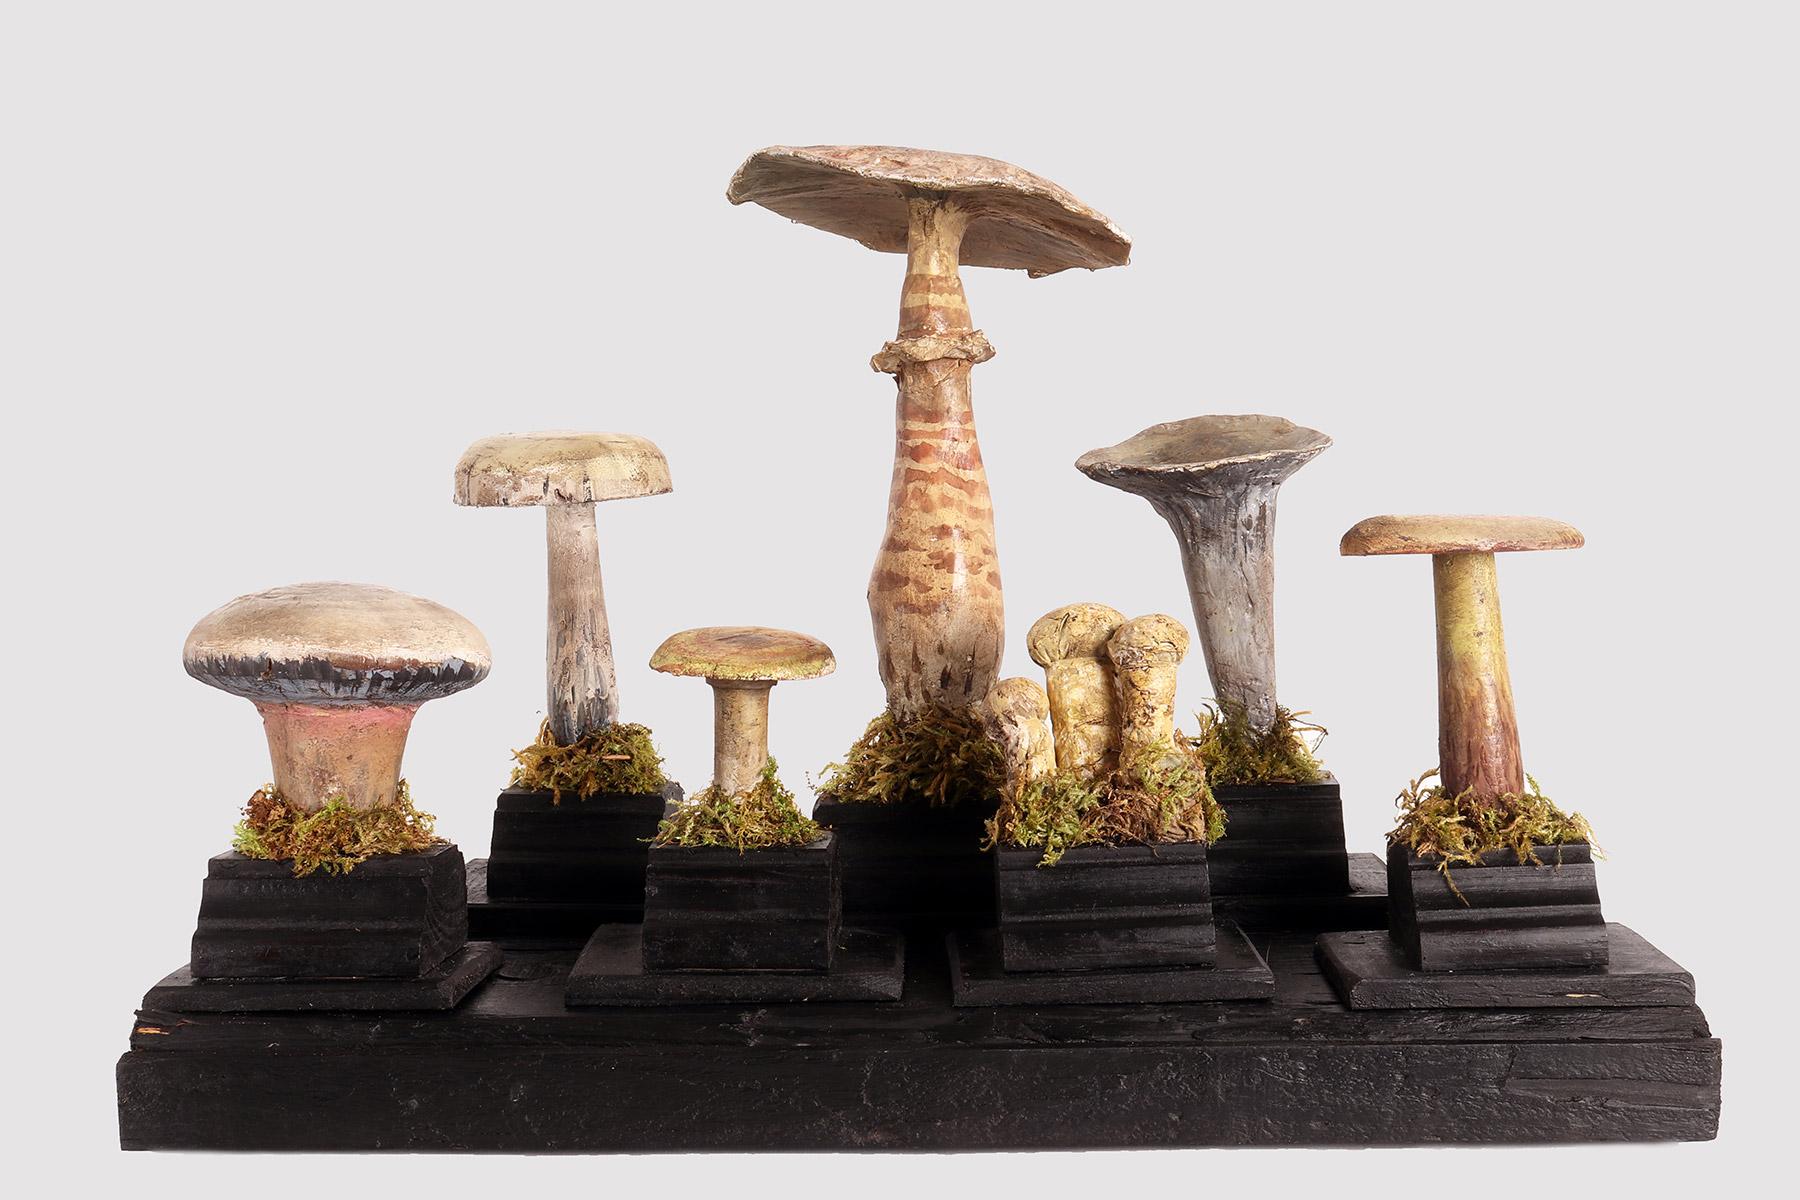 Plaster Mushroom Model, Italy, 1900